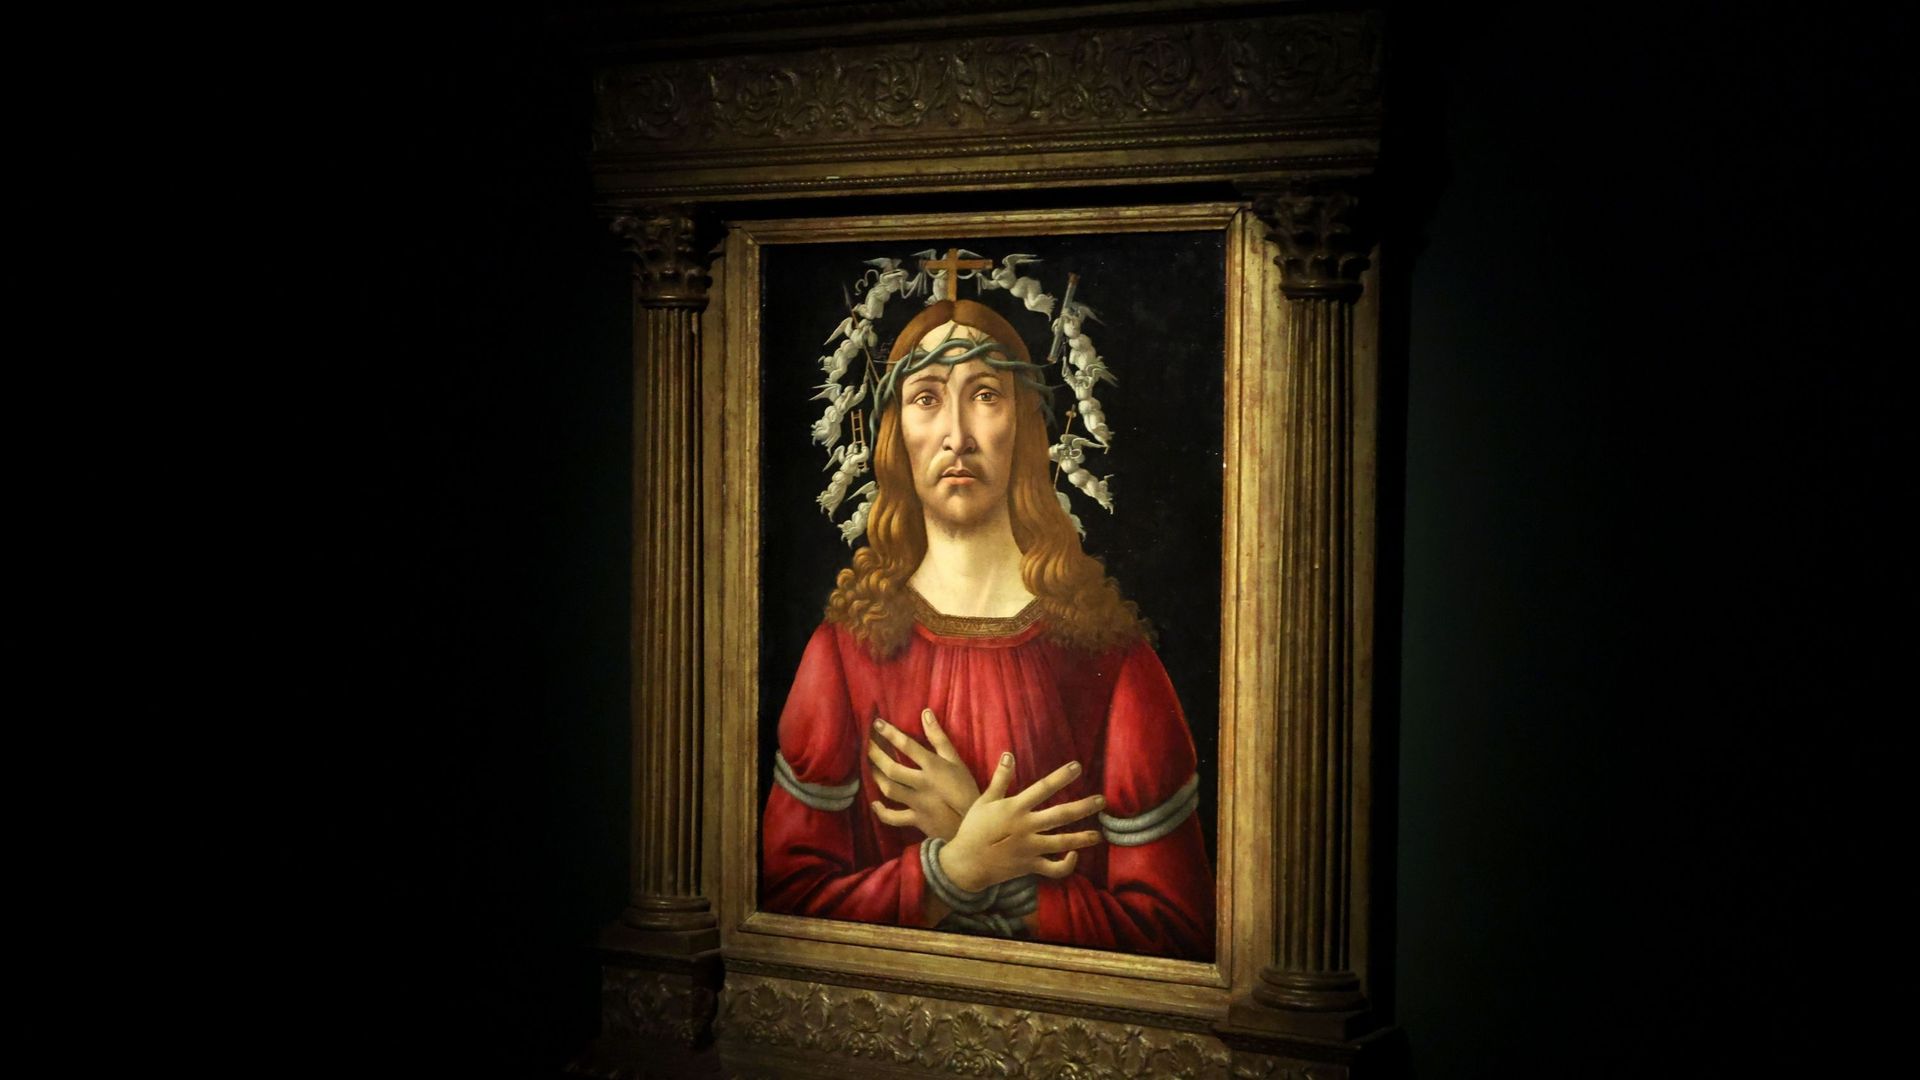 "The Man of sorrows" de Sandro Botticelli en vente chez Sotheby’s, janvier 2022.